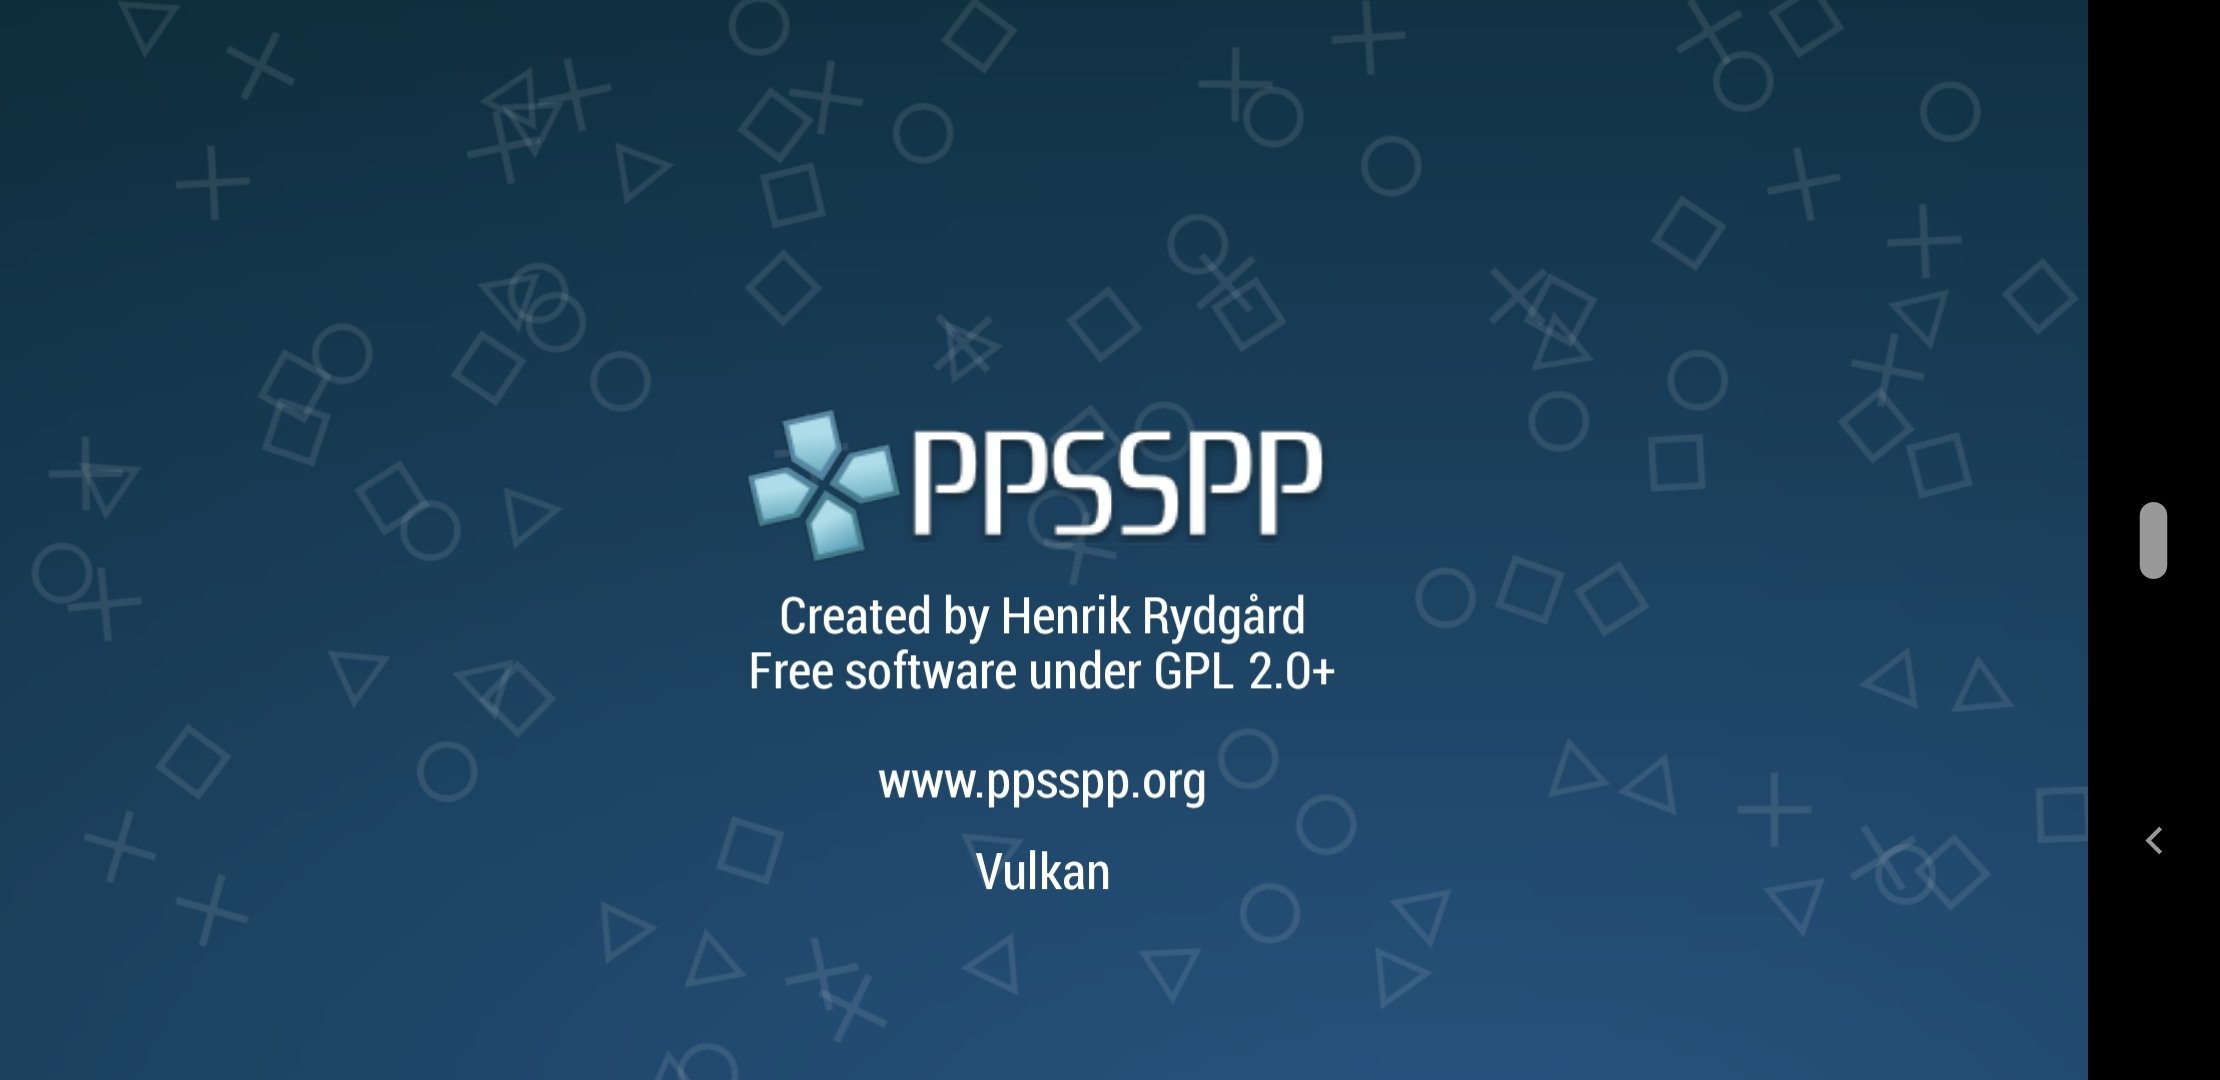 psp games download APK (Android App) - Baixar Grátis